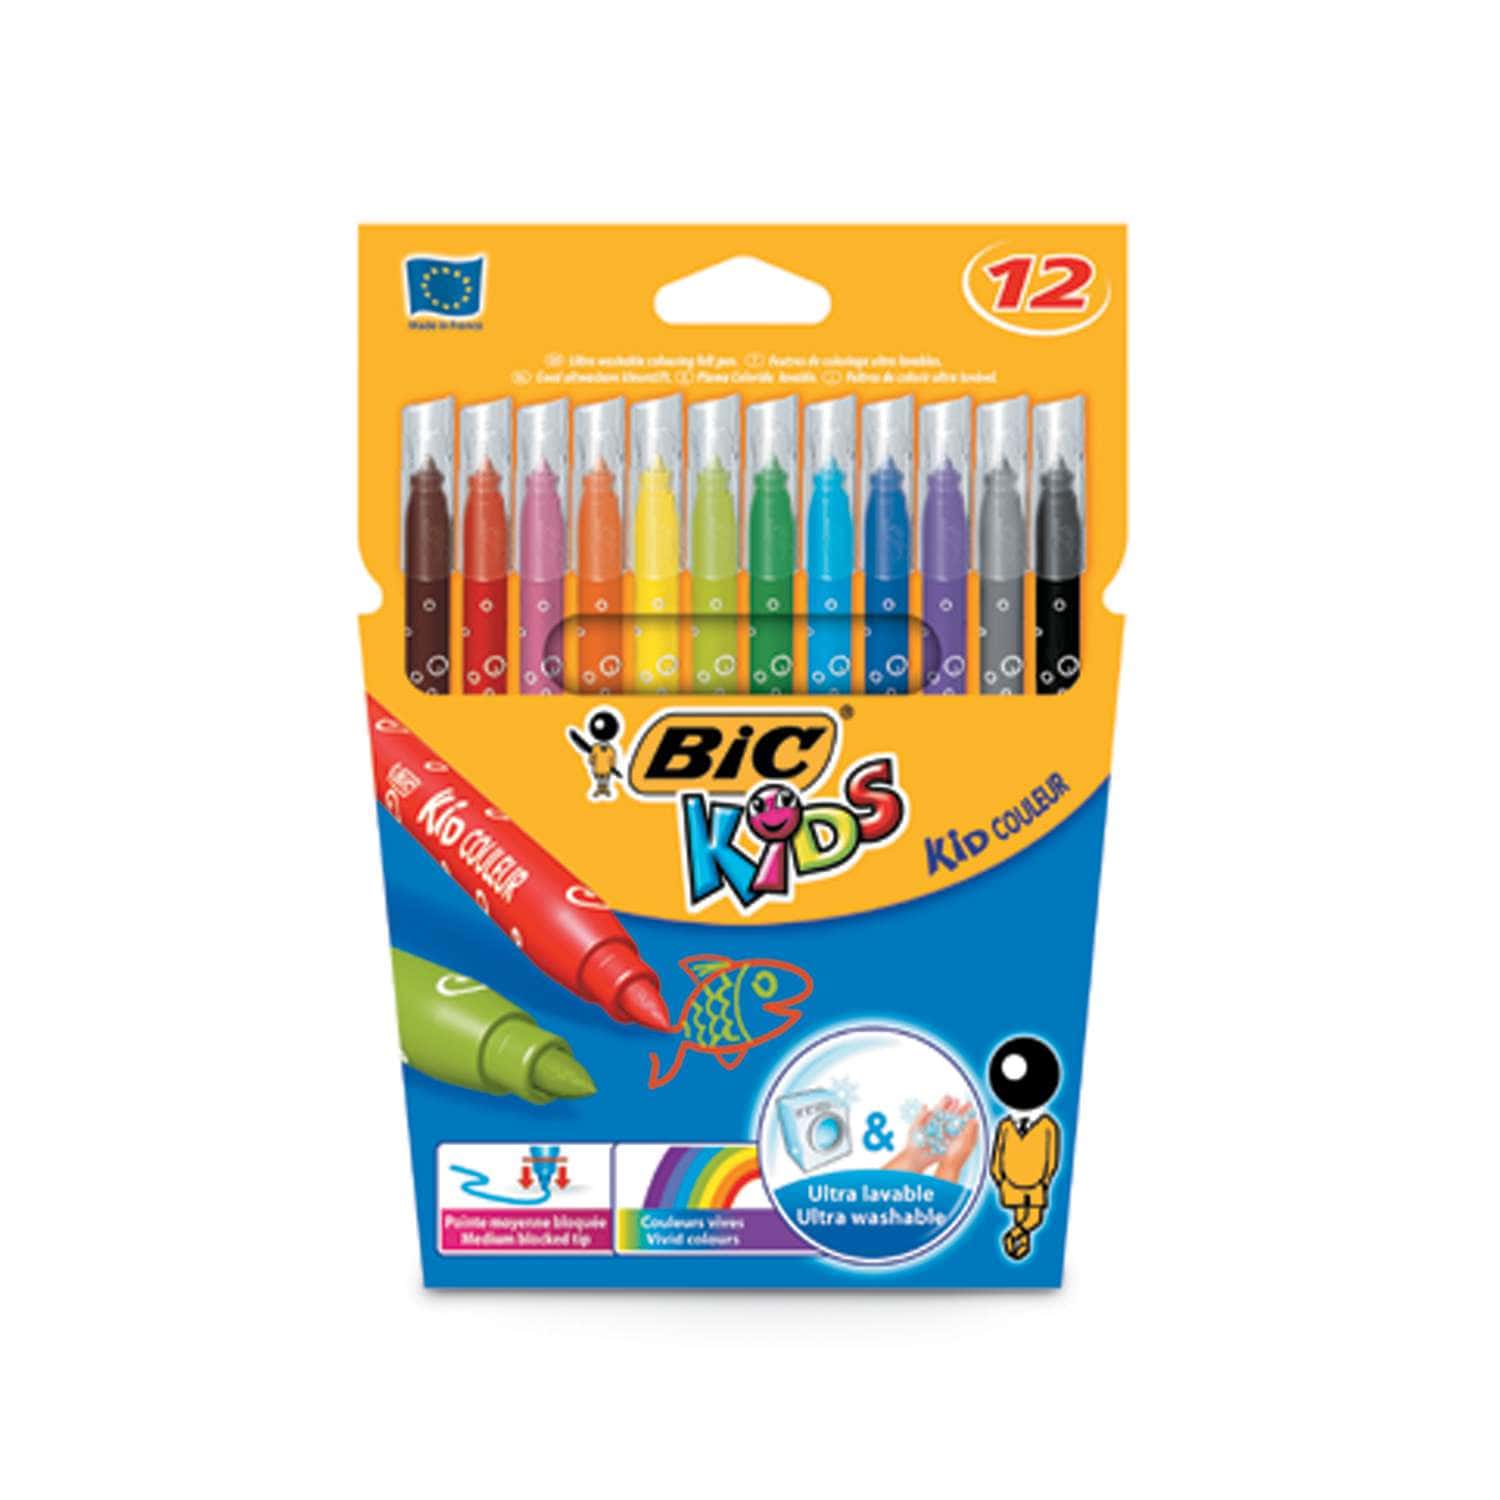 Feutres de coloriage Bic Kids KID COULEUR XL - étui de 12